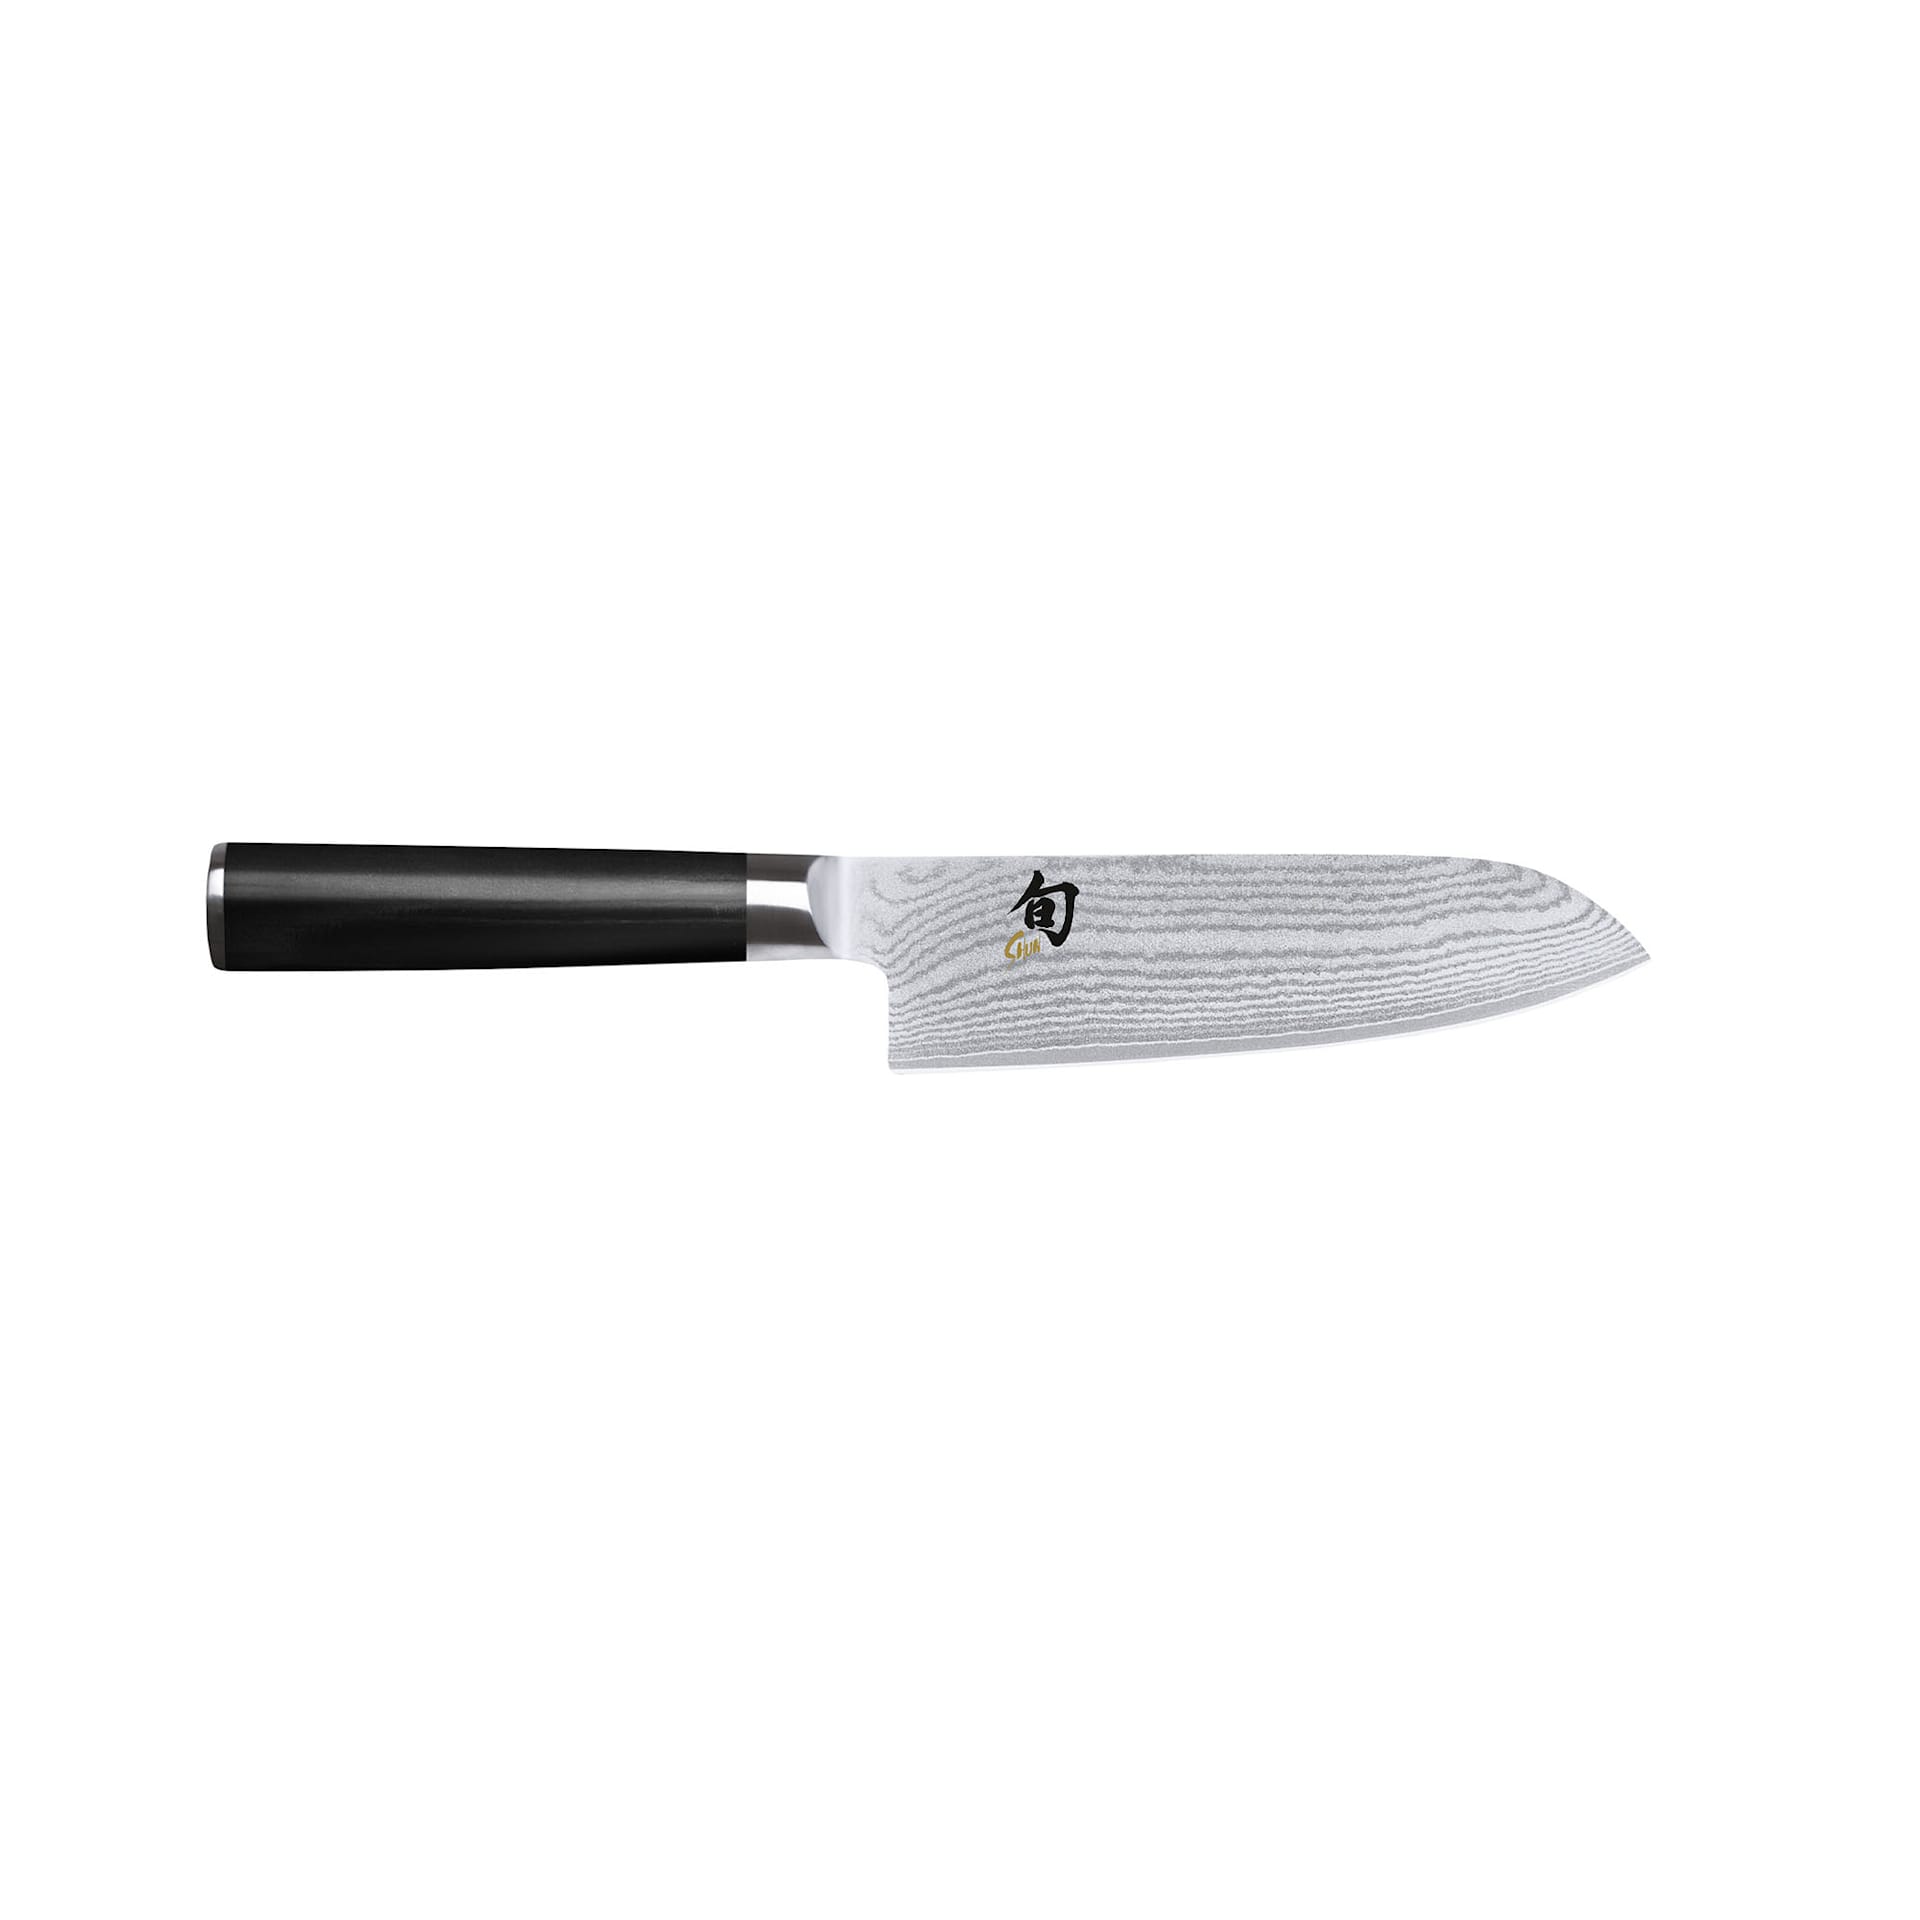 SHUN CLASSIC Santoku knife 14 cm - KAI - NO GA